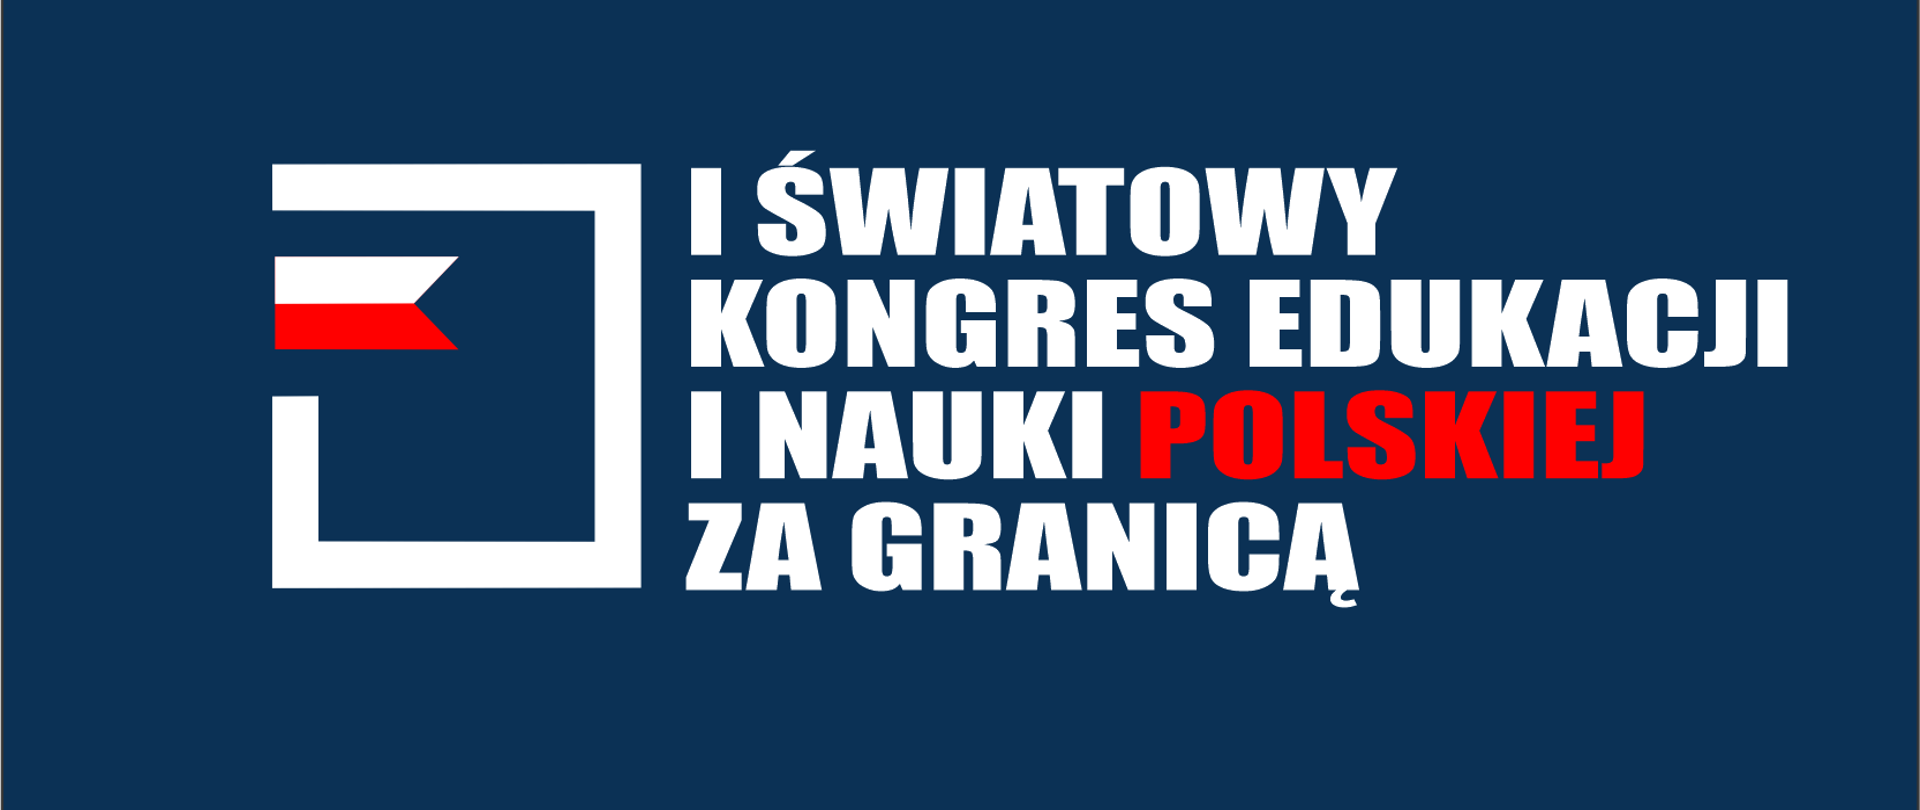 Ambasadorzy polskiej kultury i języka na Kongresie w Warszawie